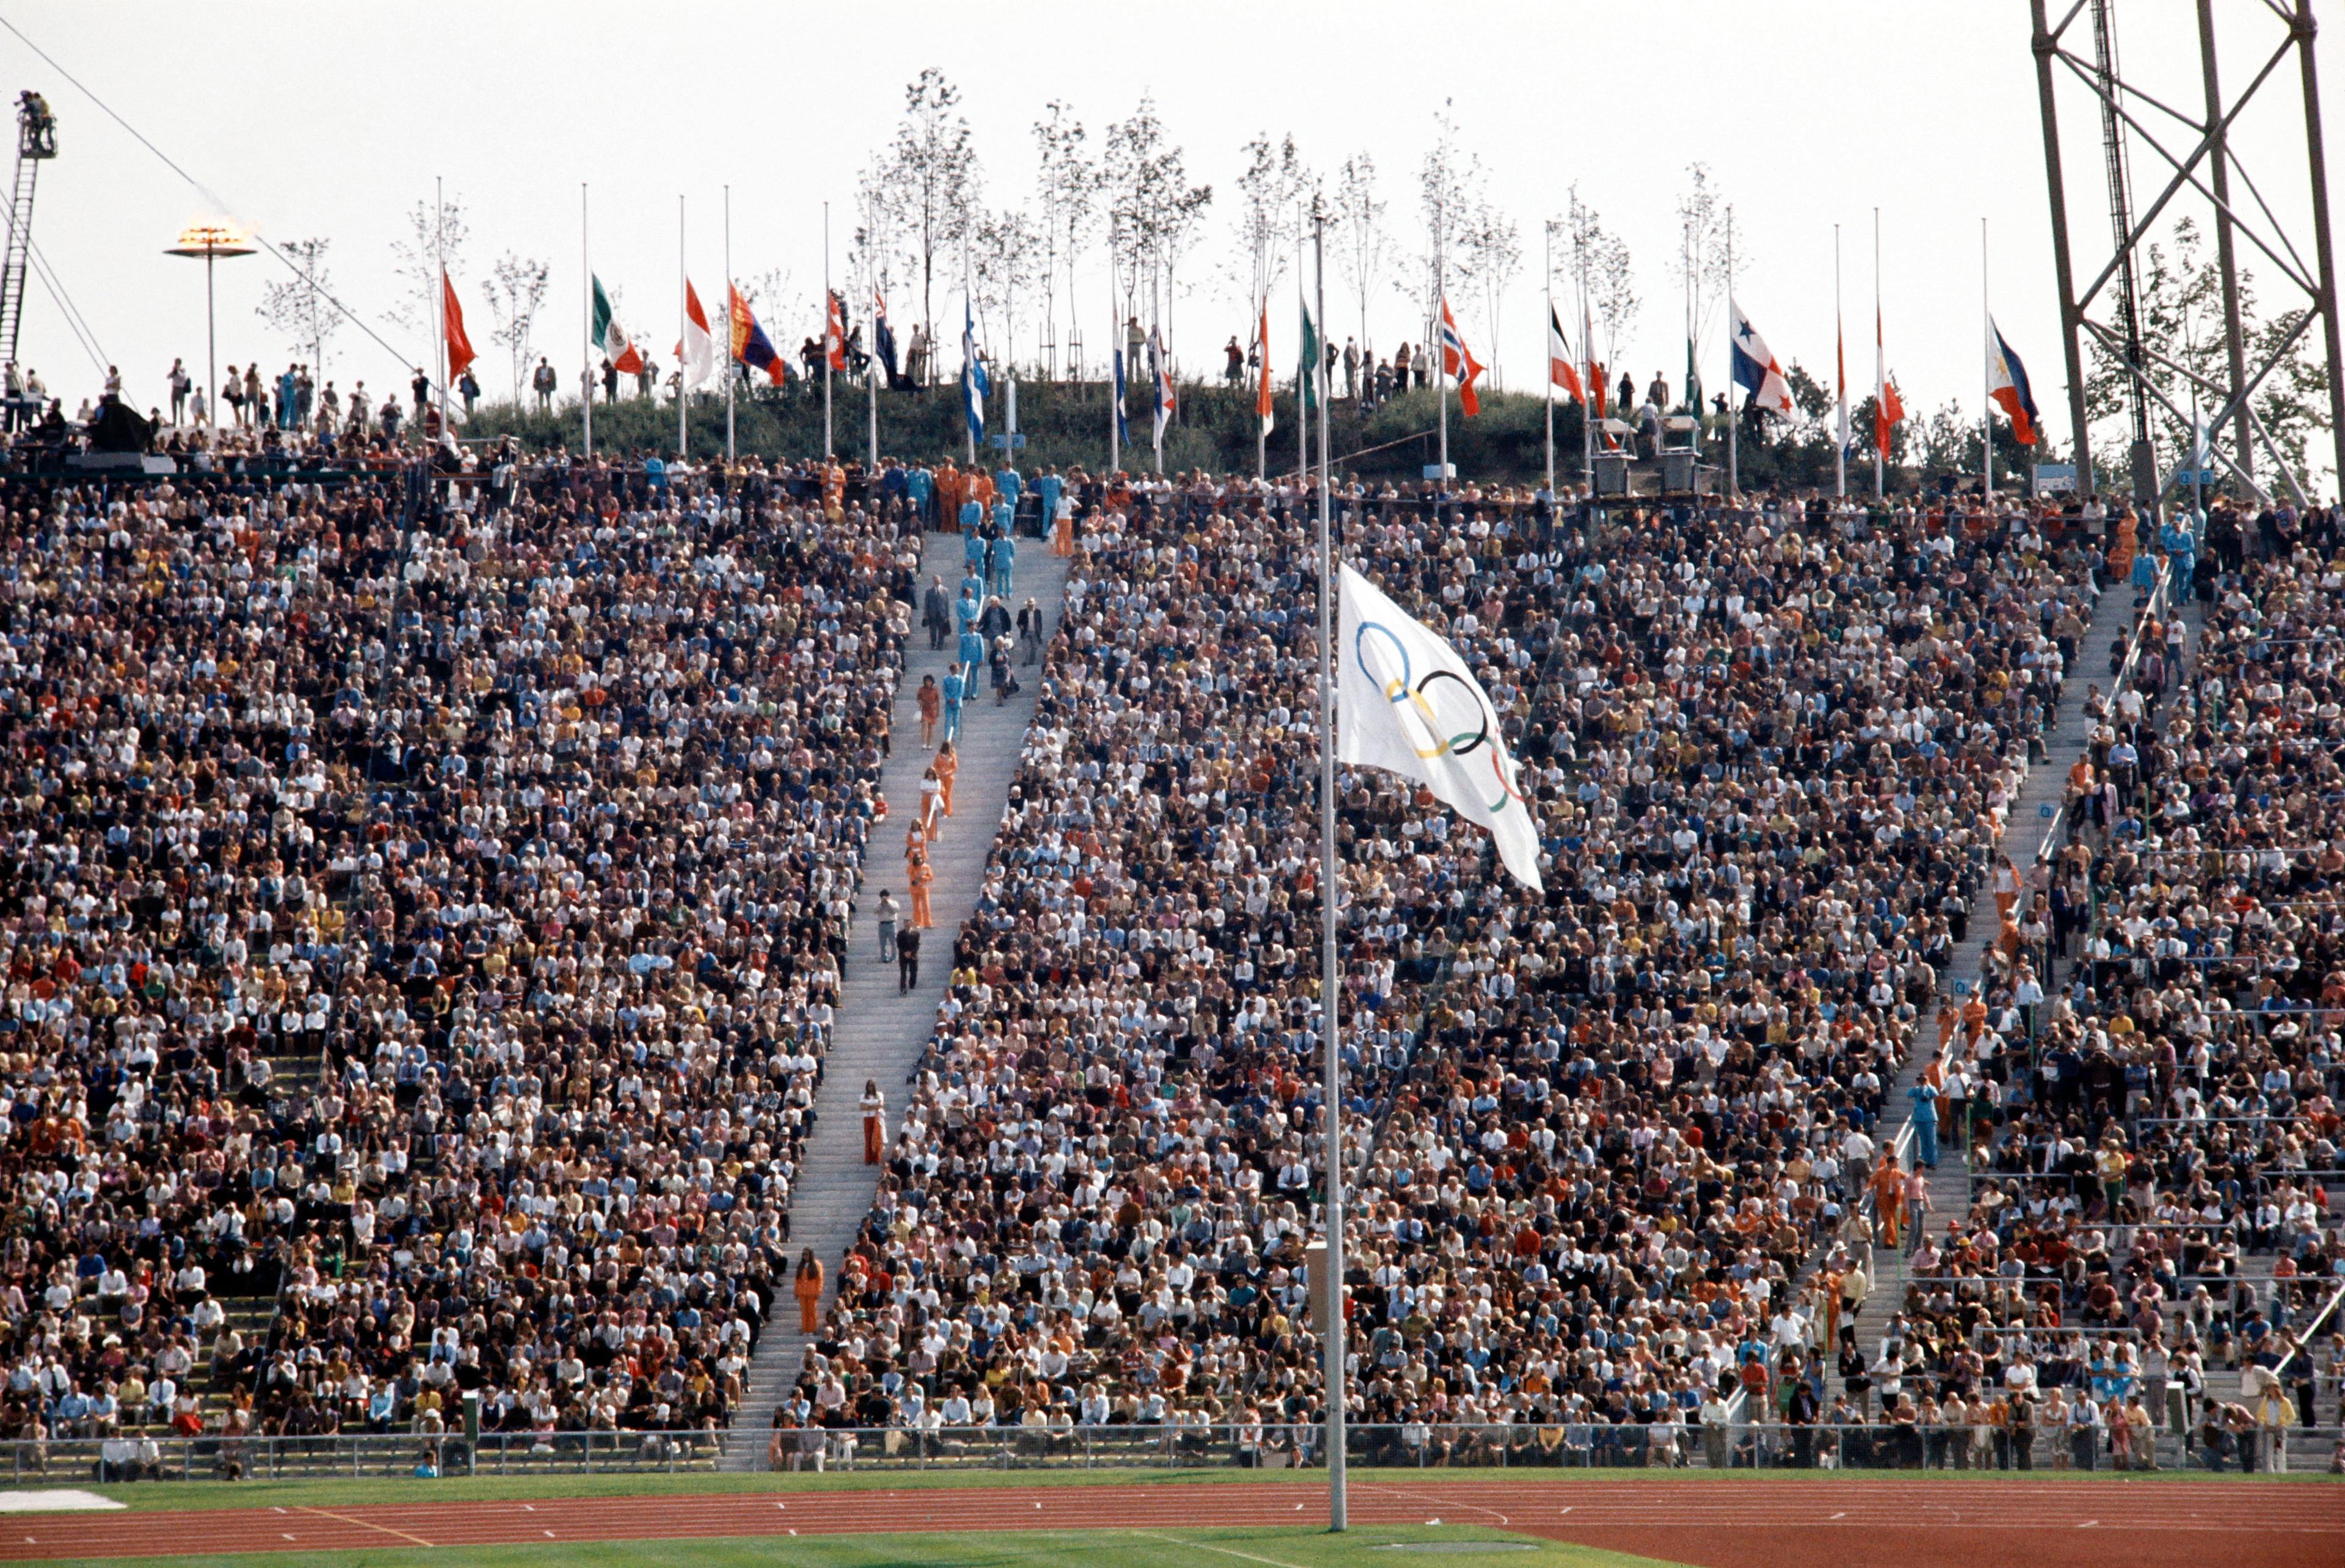 Dagen efter terrordådet rådde djup förstämning i OS-byn. Samtliga flaggor var halade på halv stång och de mördade israeliska idrottsmännen och ledarna hedrades med en tyst minut. Sedan fortsatte spelen. Foto: AFP via Getty Images